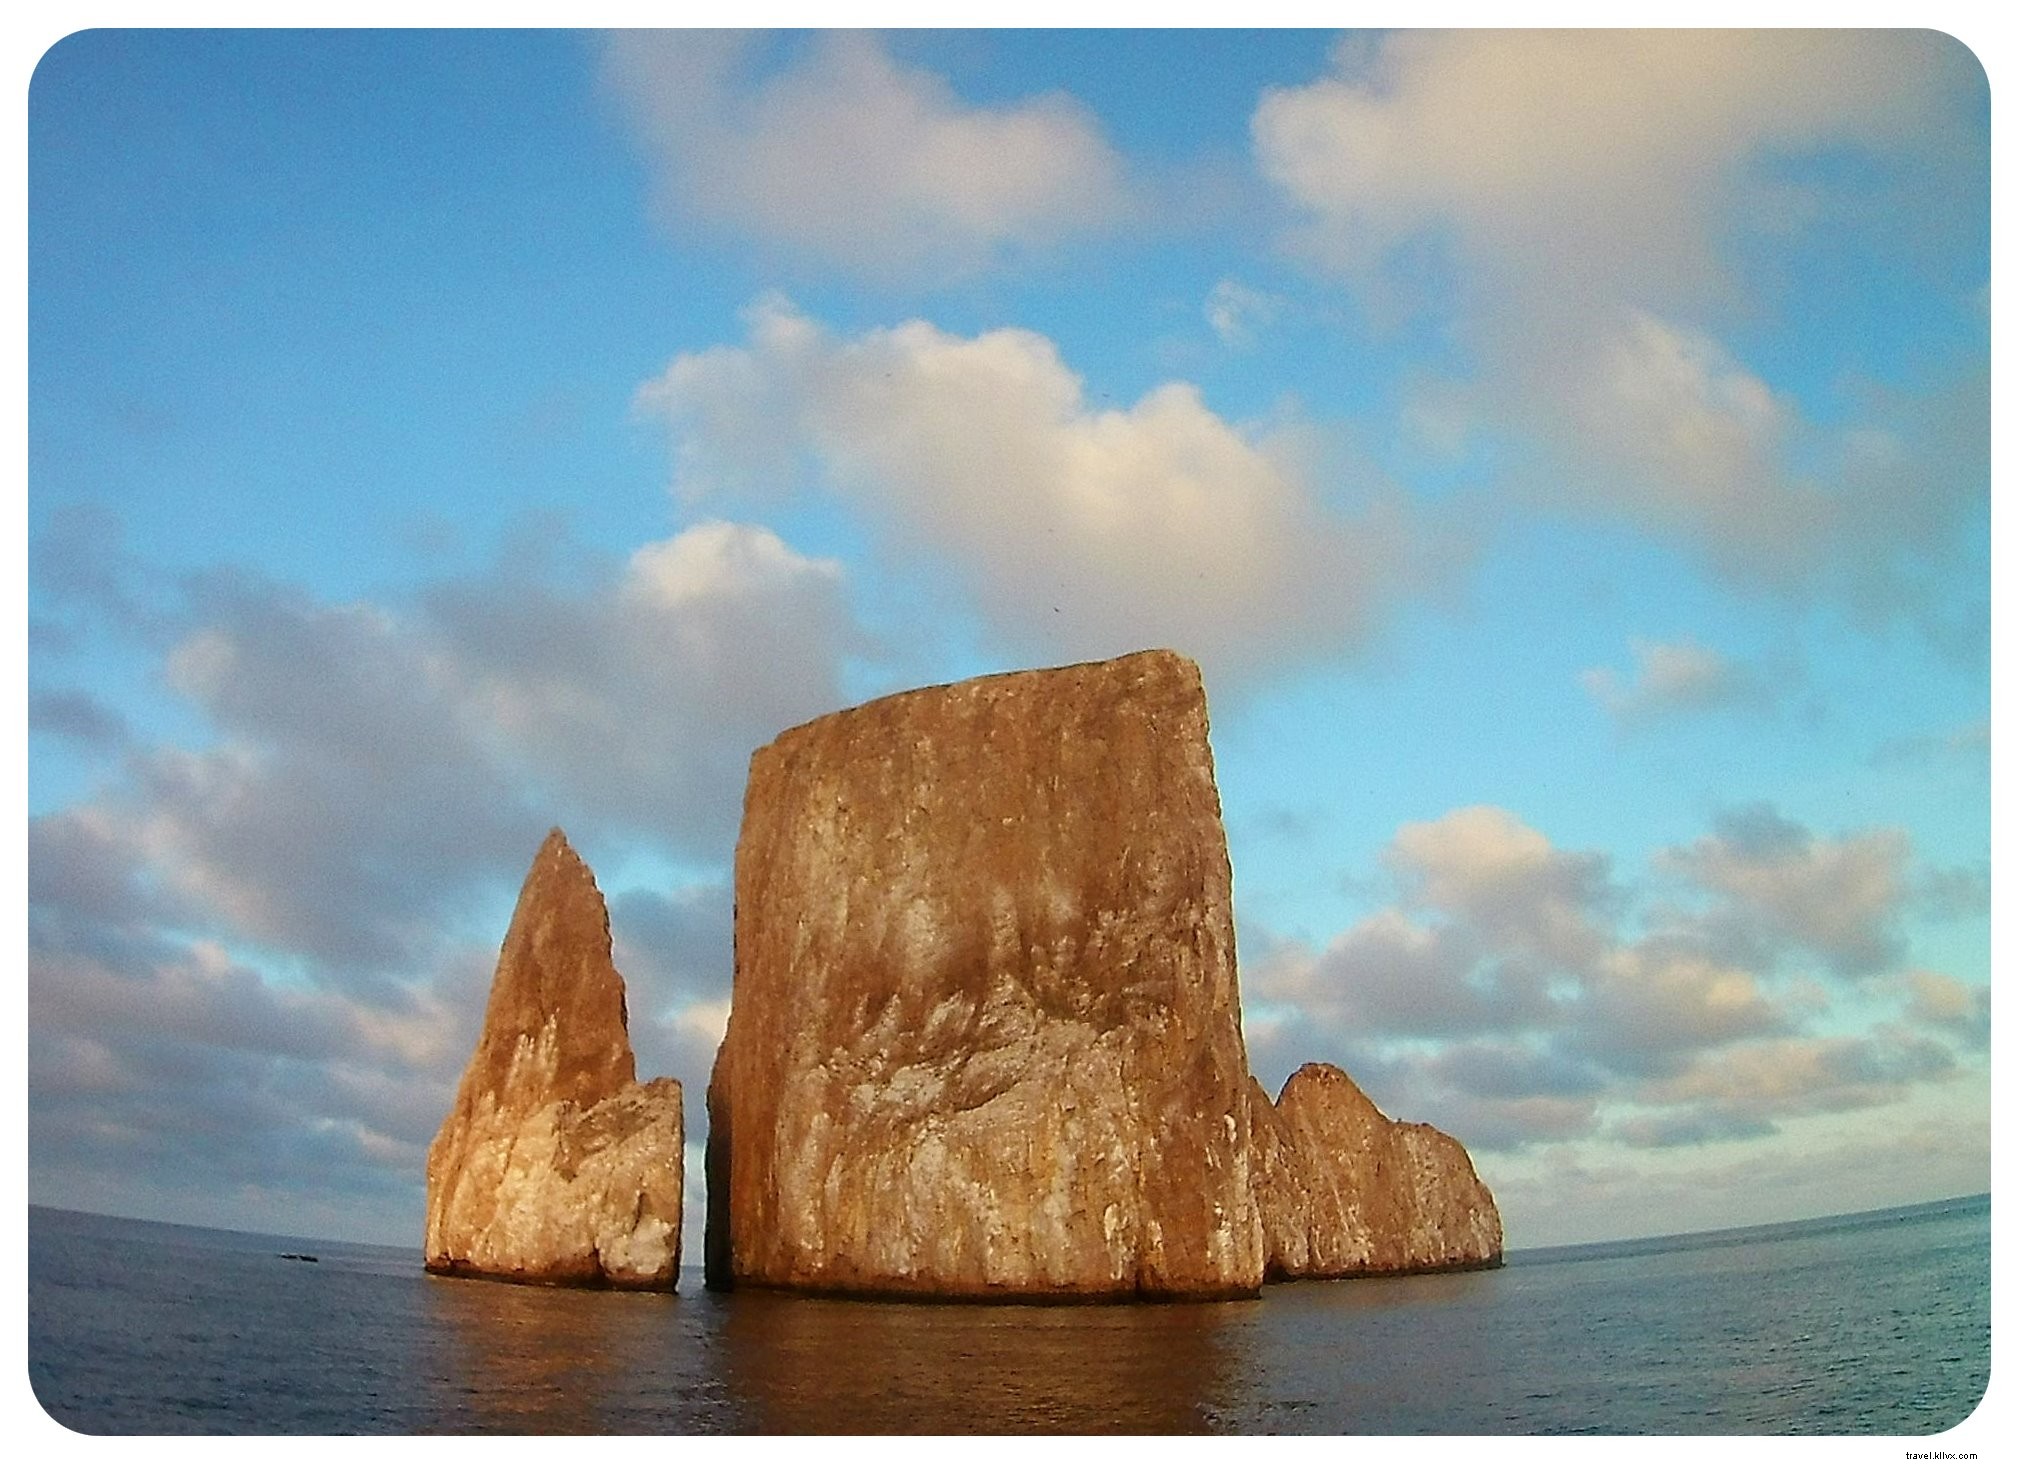 La mia crociera alle Isole Galapagos:un sogno di viaggio che diventa realtà